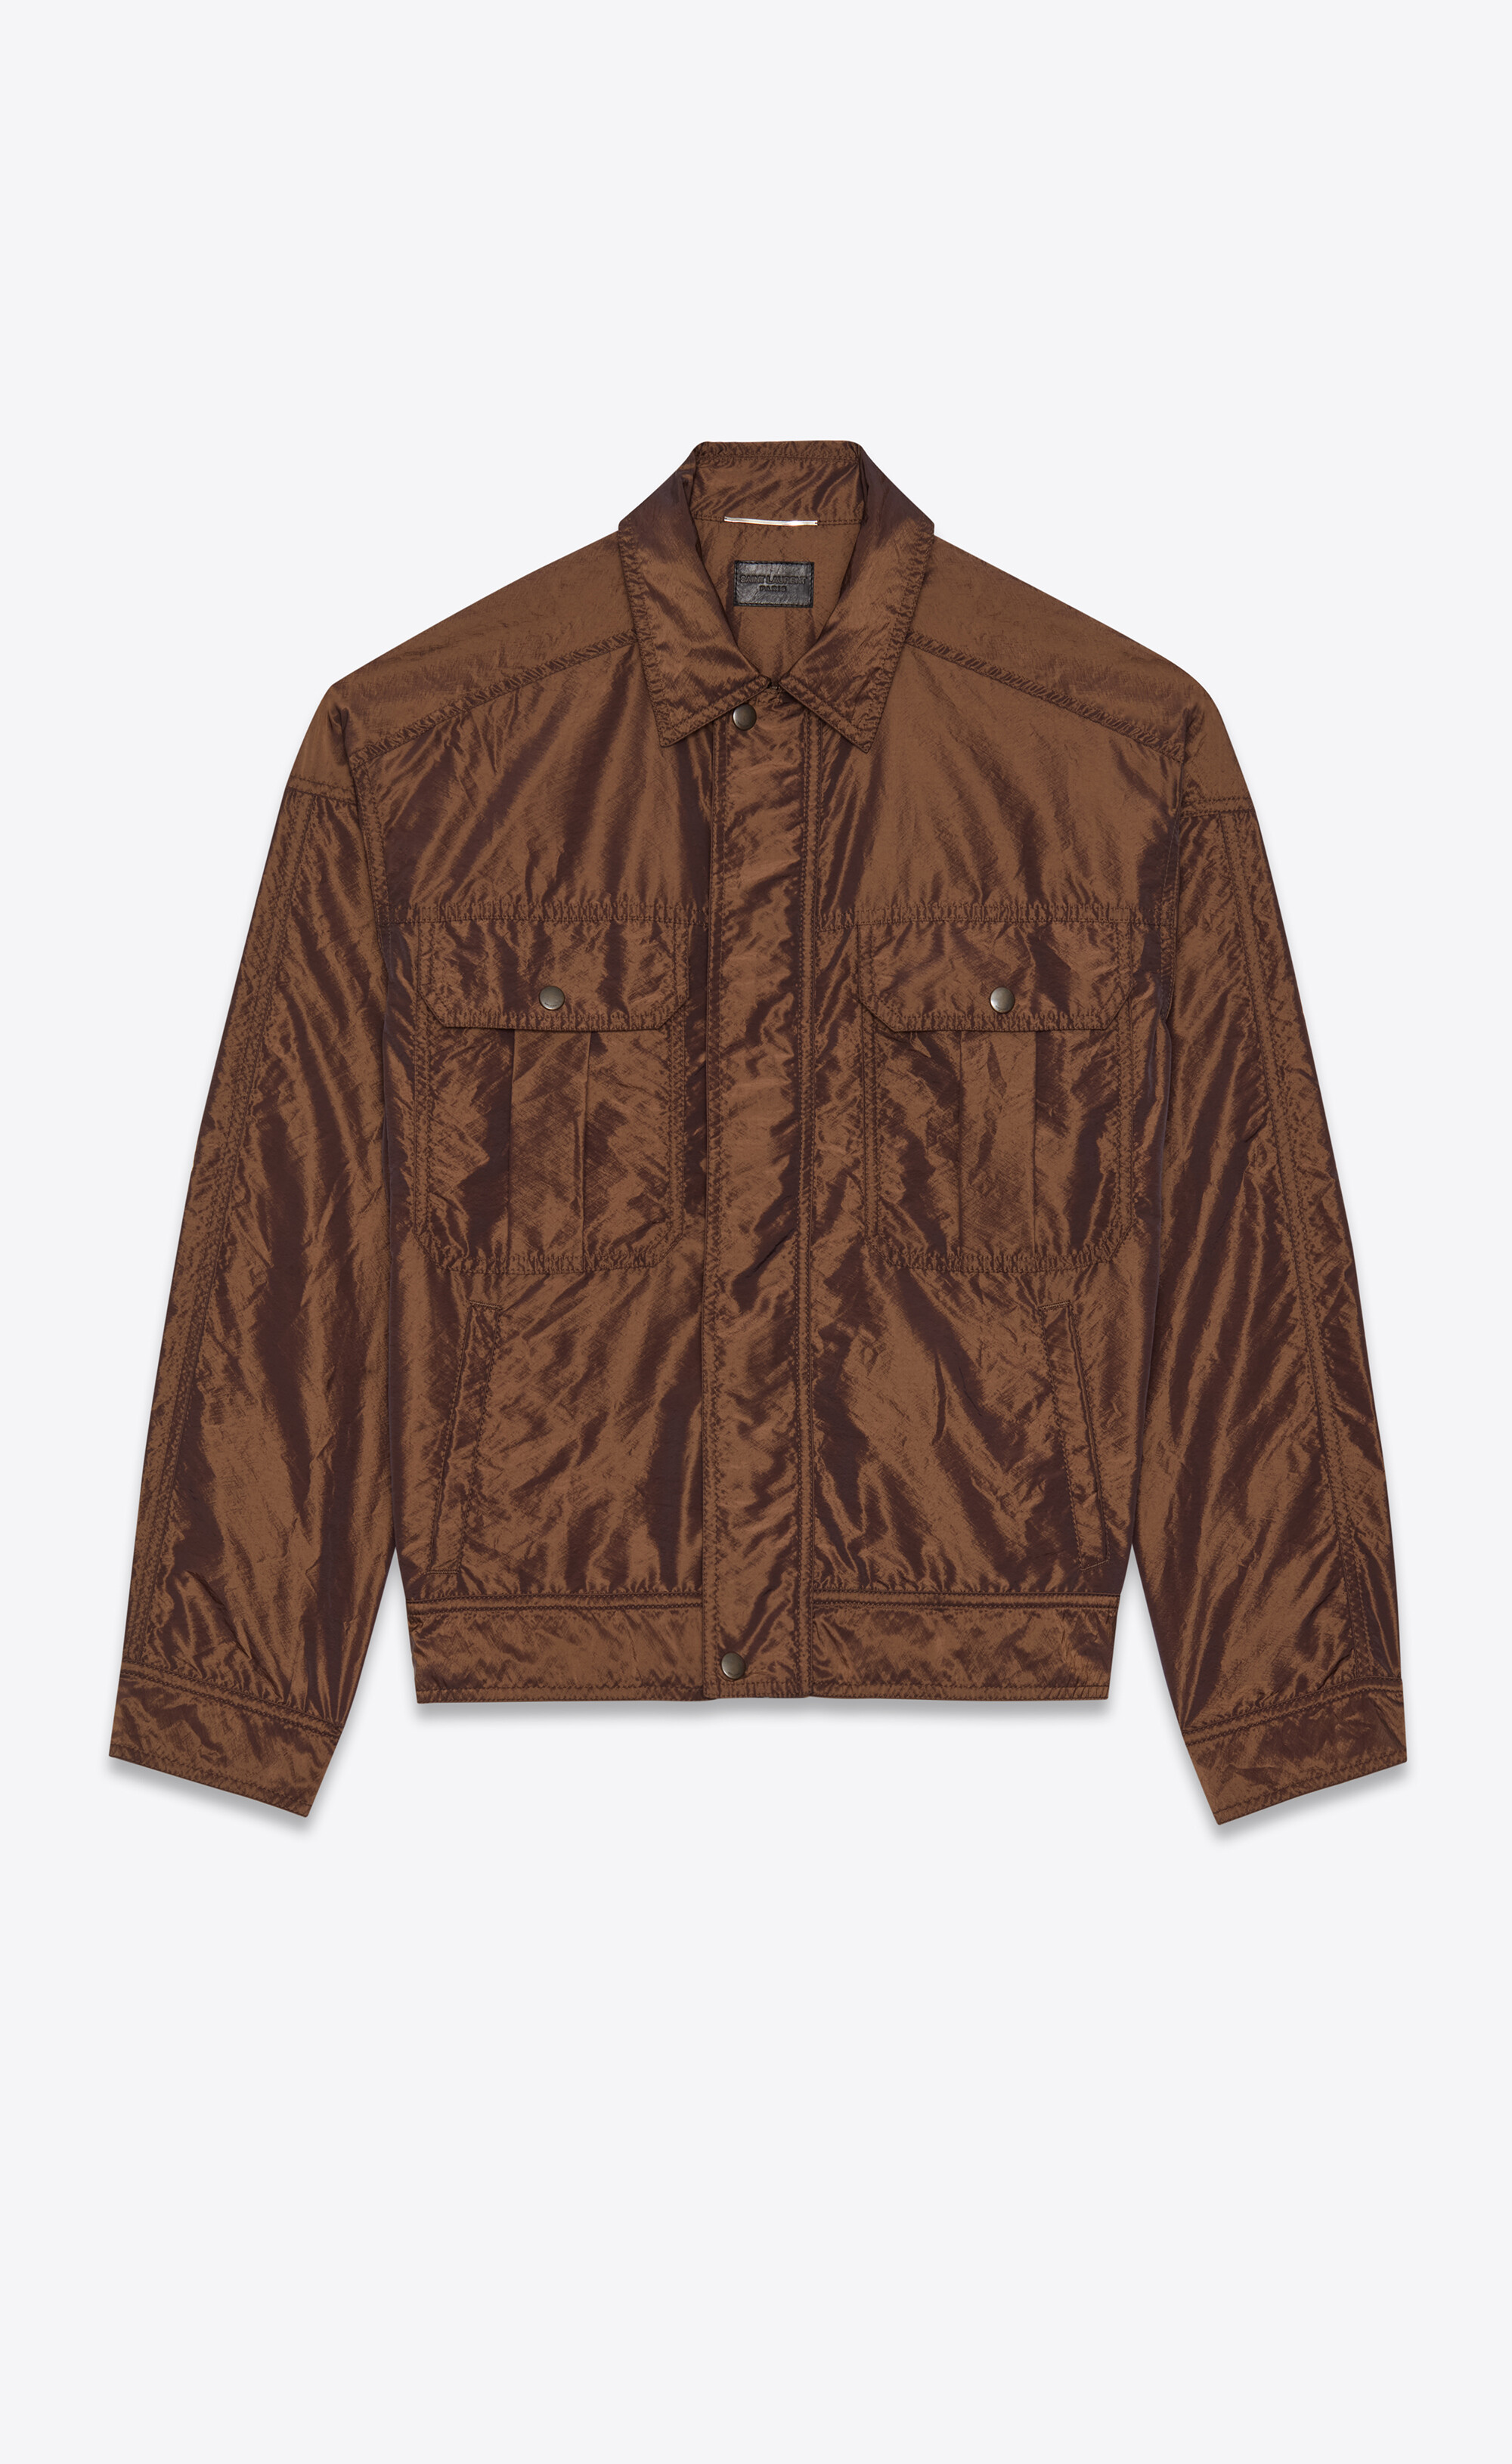 80's army jacket in leopard taffeta